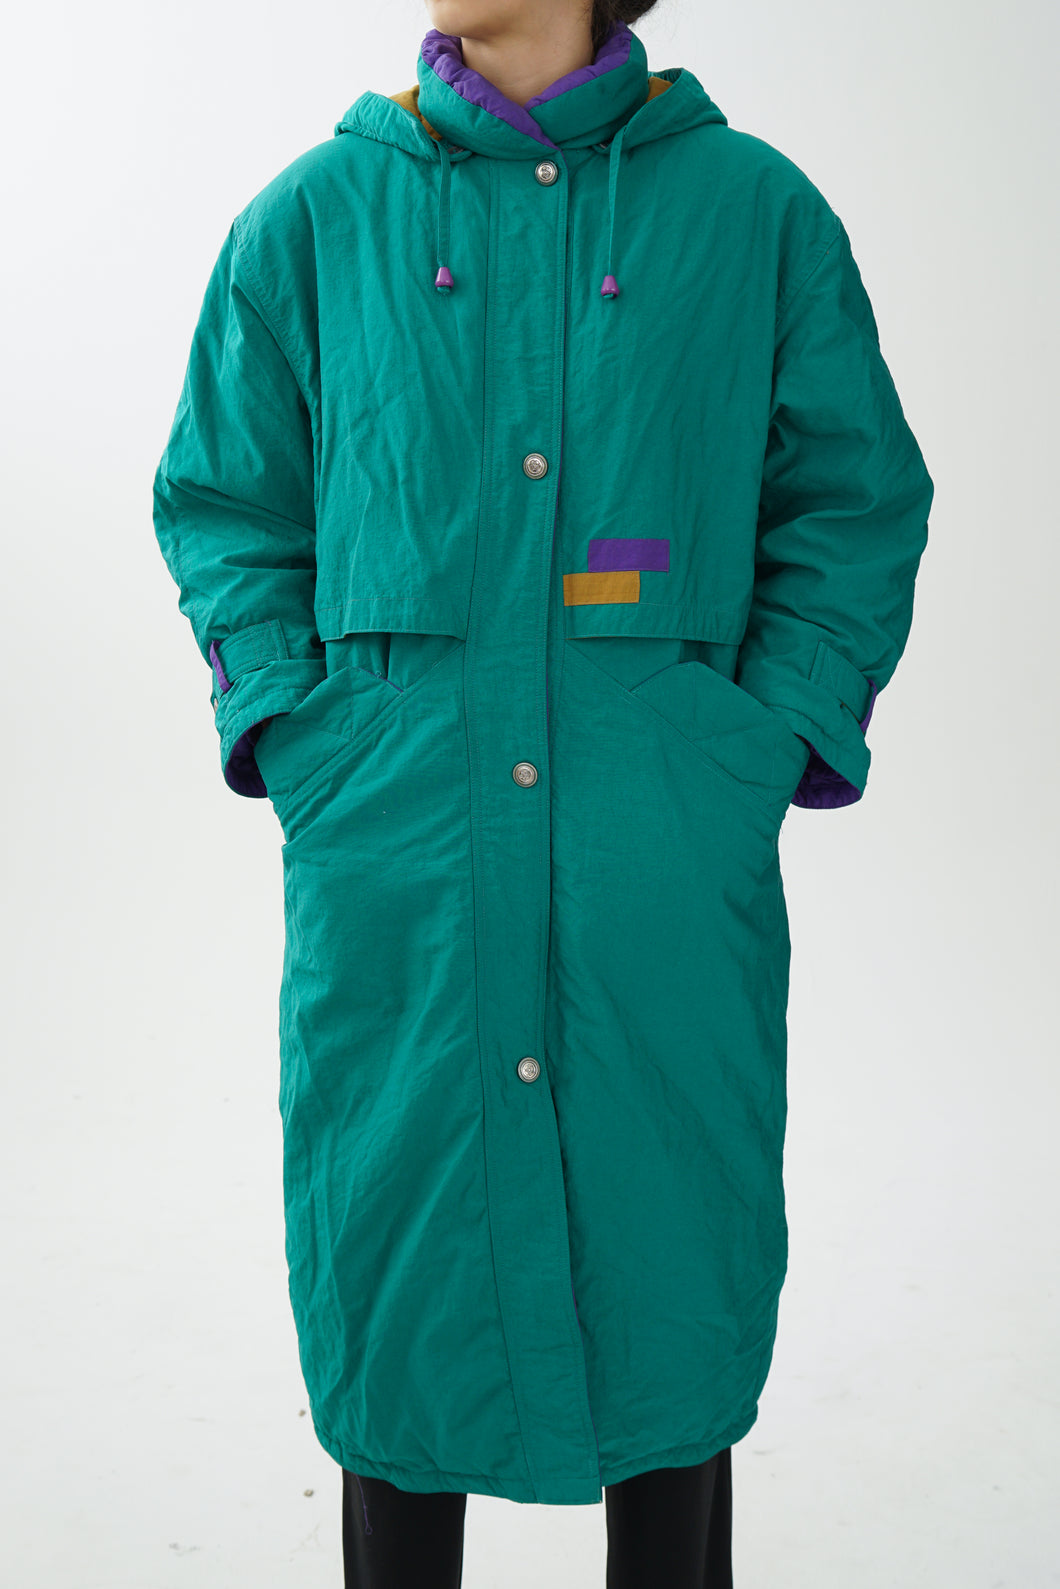 Manteau long vintage en duvet 80/20 vert et mauve unisex taille 8 (S)